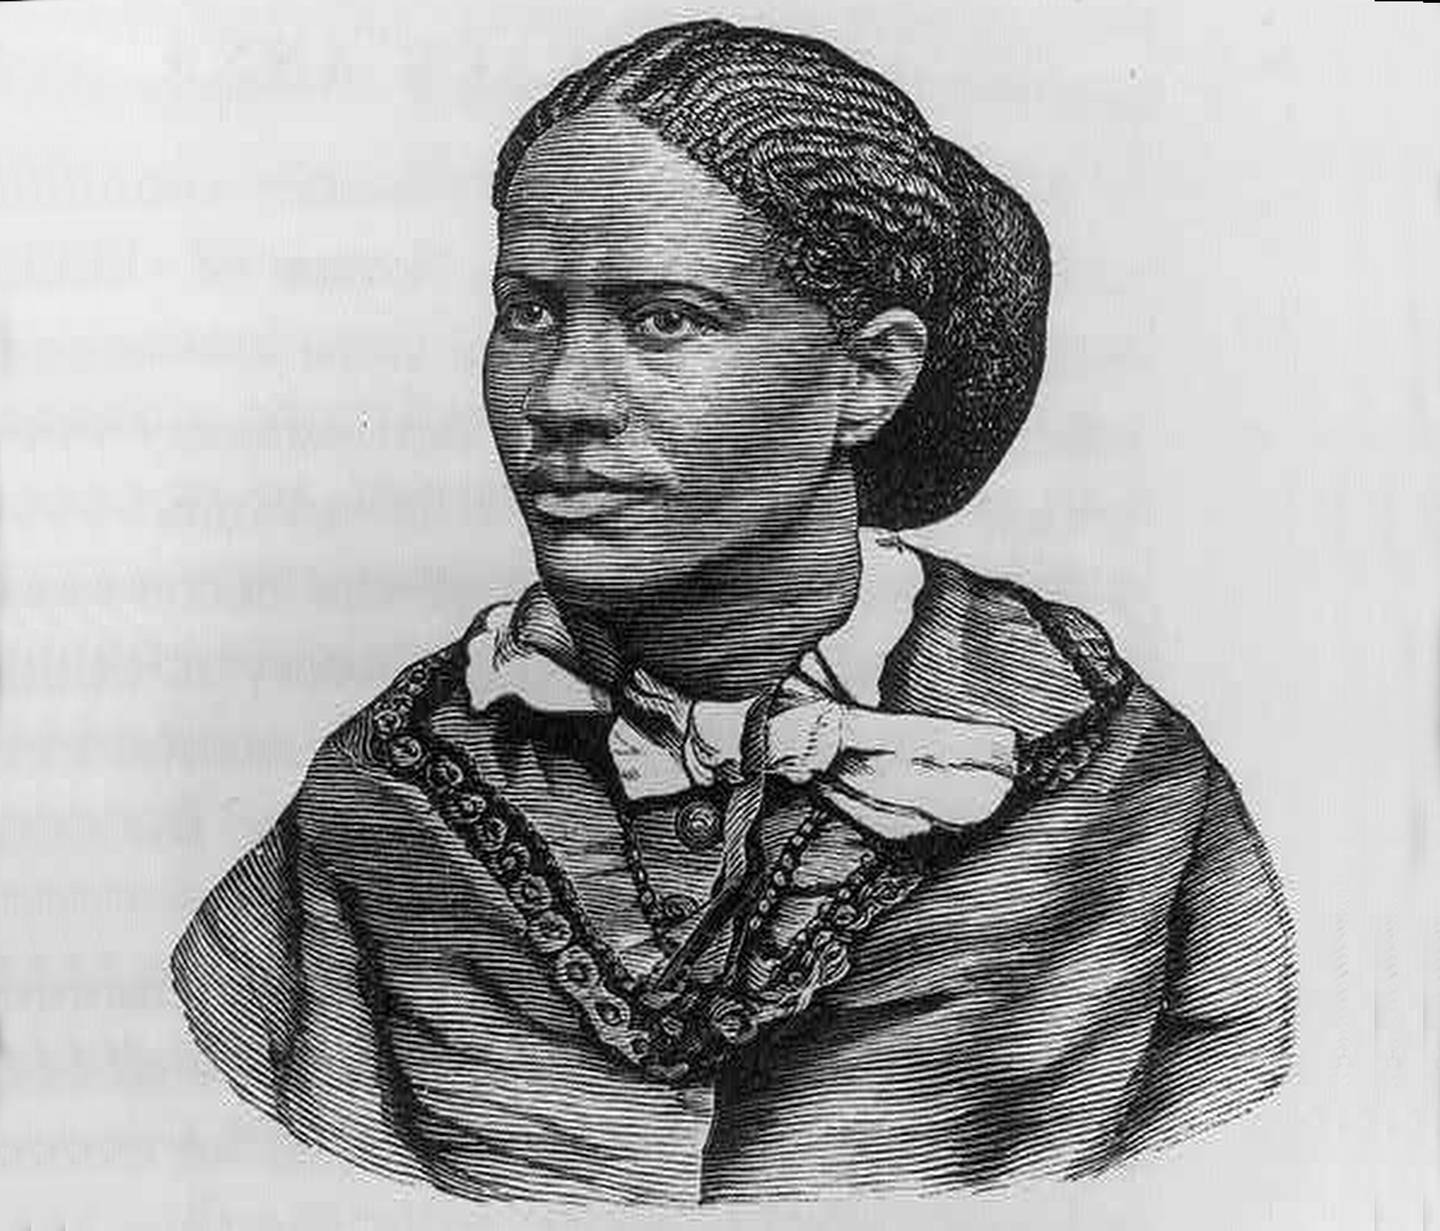 Frances Ellen Watkins Harper, 1825-1911